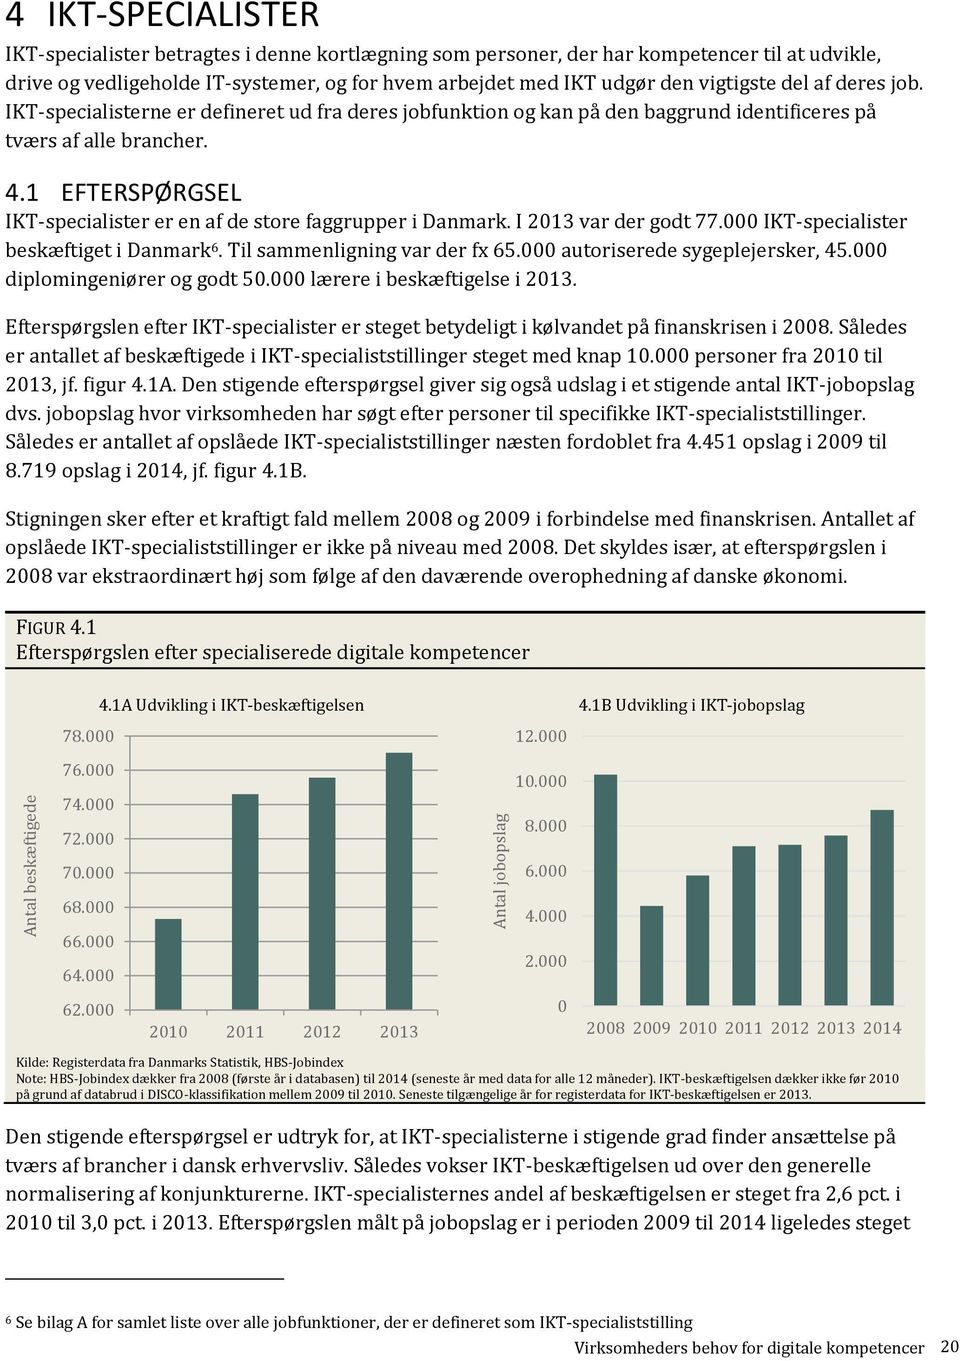 1 EFTERSPØRGSEL IKT-specialister er en af de store faggrupper i Danmark. I 2013 var der godt 77.000 IKT-specialister beskæftiget i Danmark 6. Til sammenligning var der fx 65.